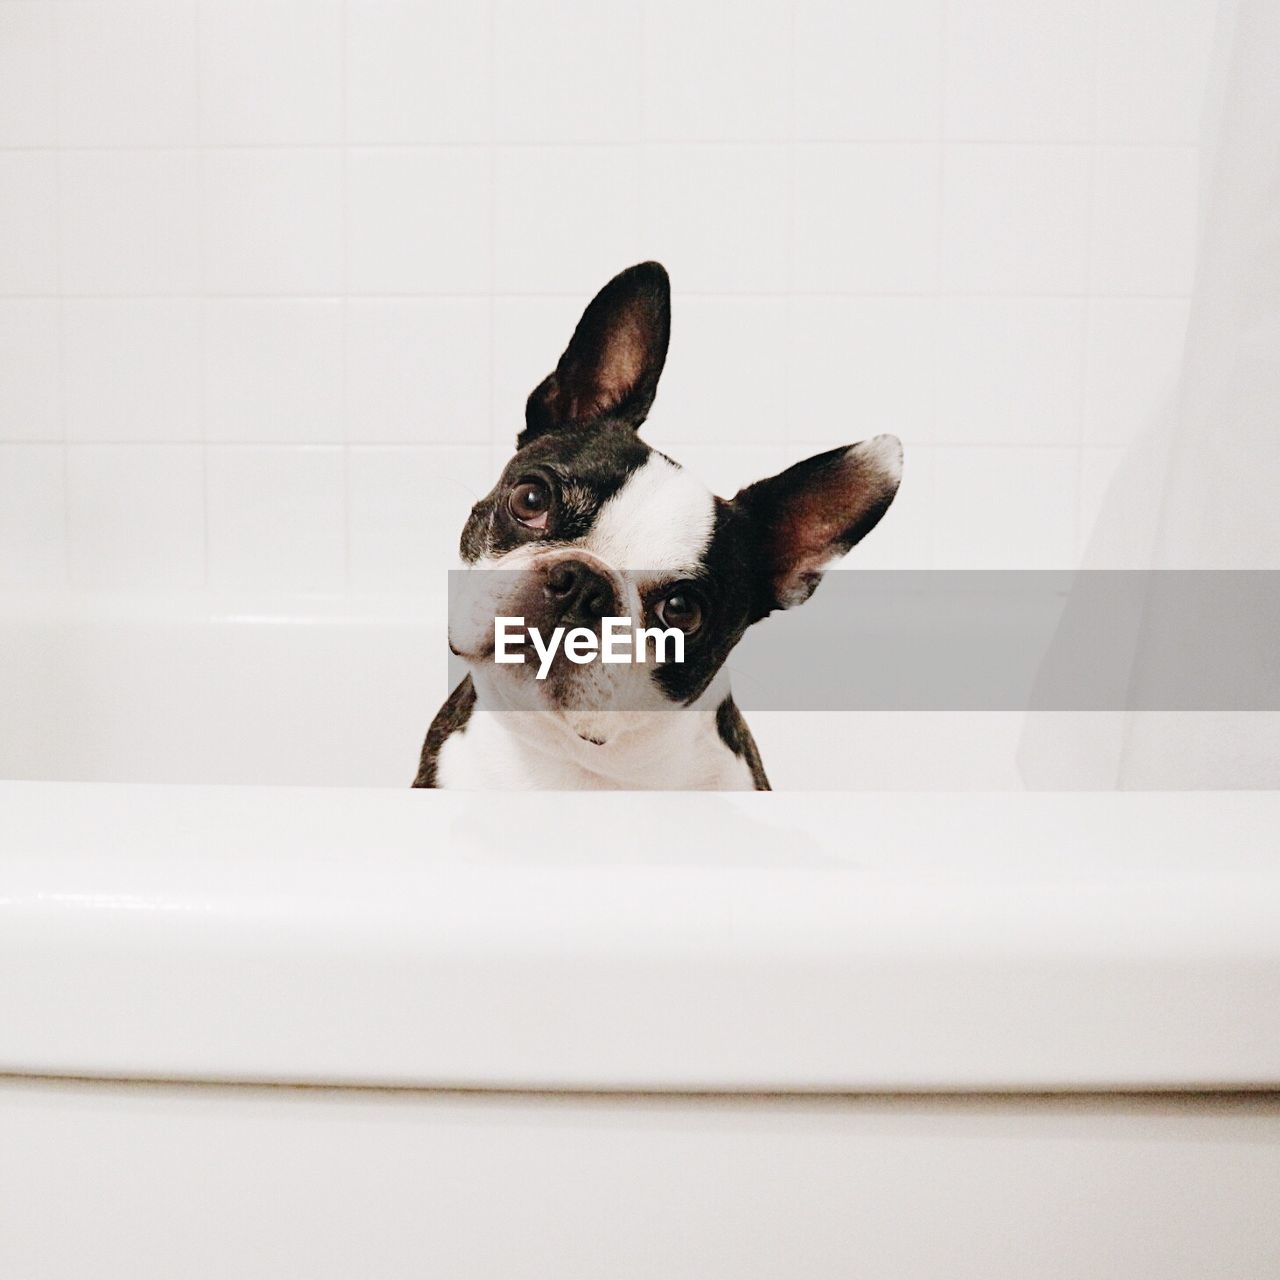 Portrait of dog sitting in tub